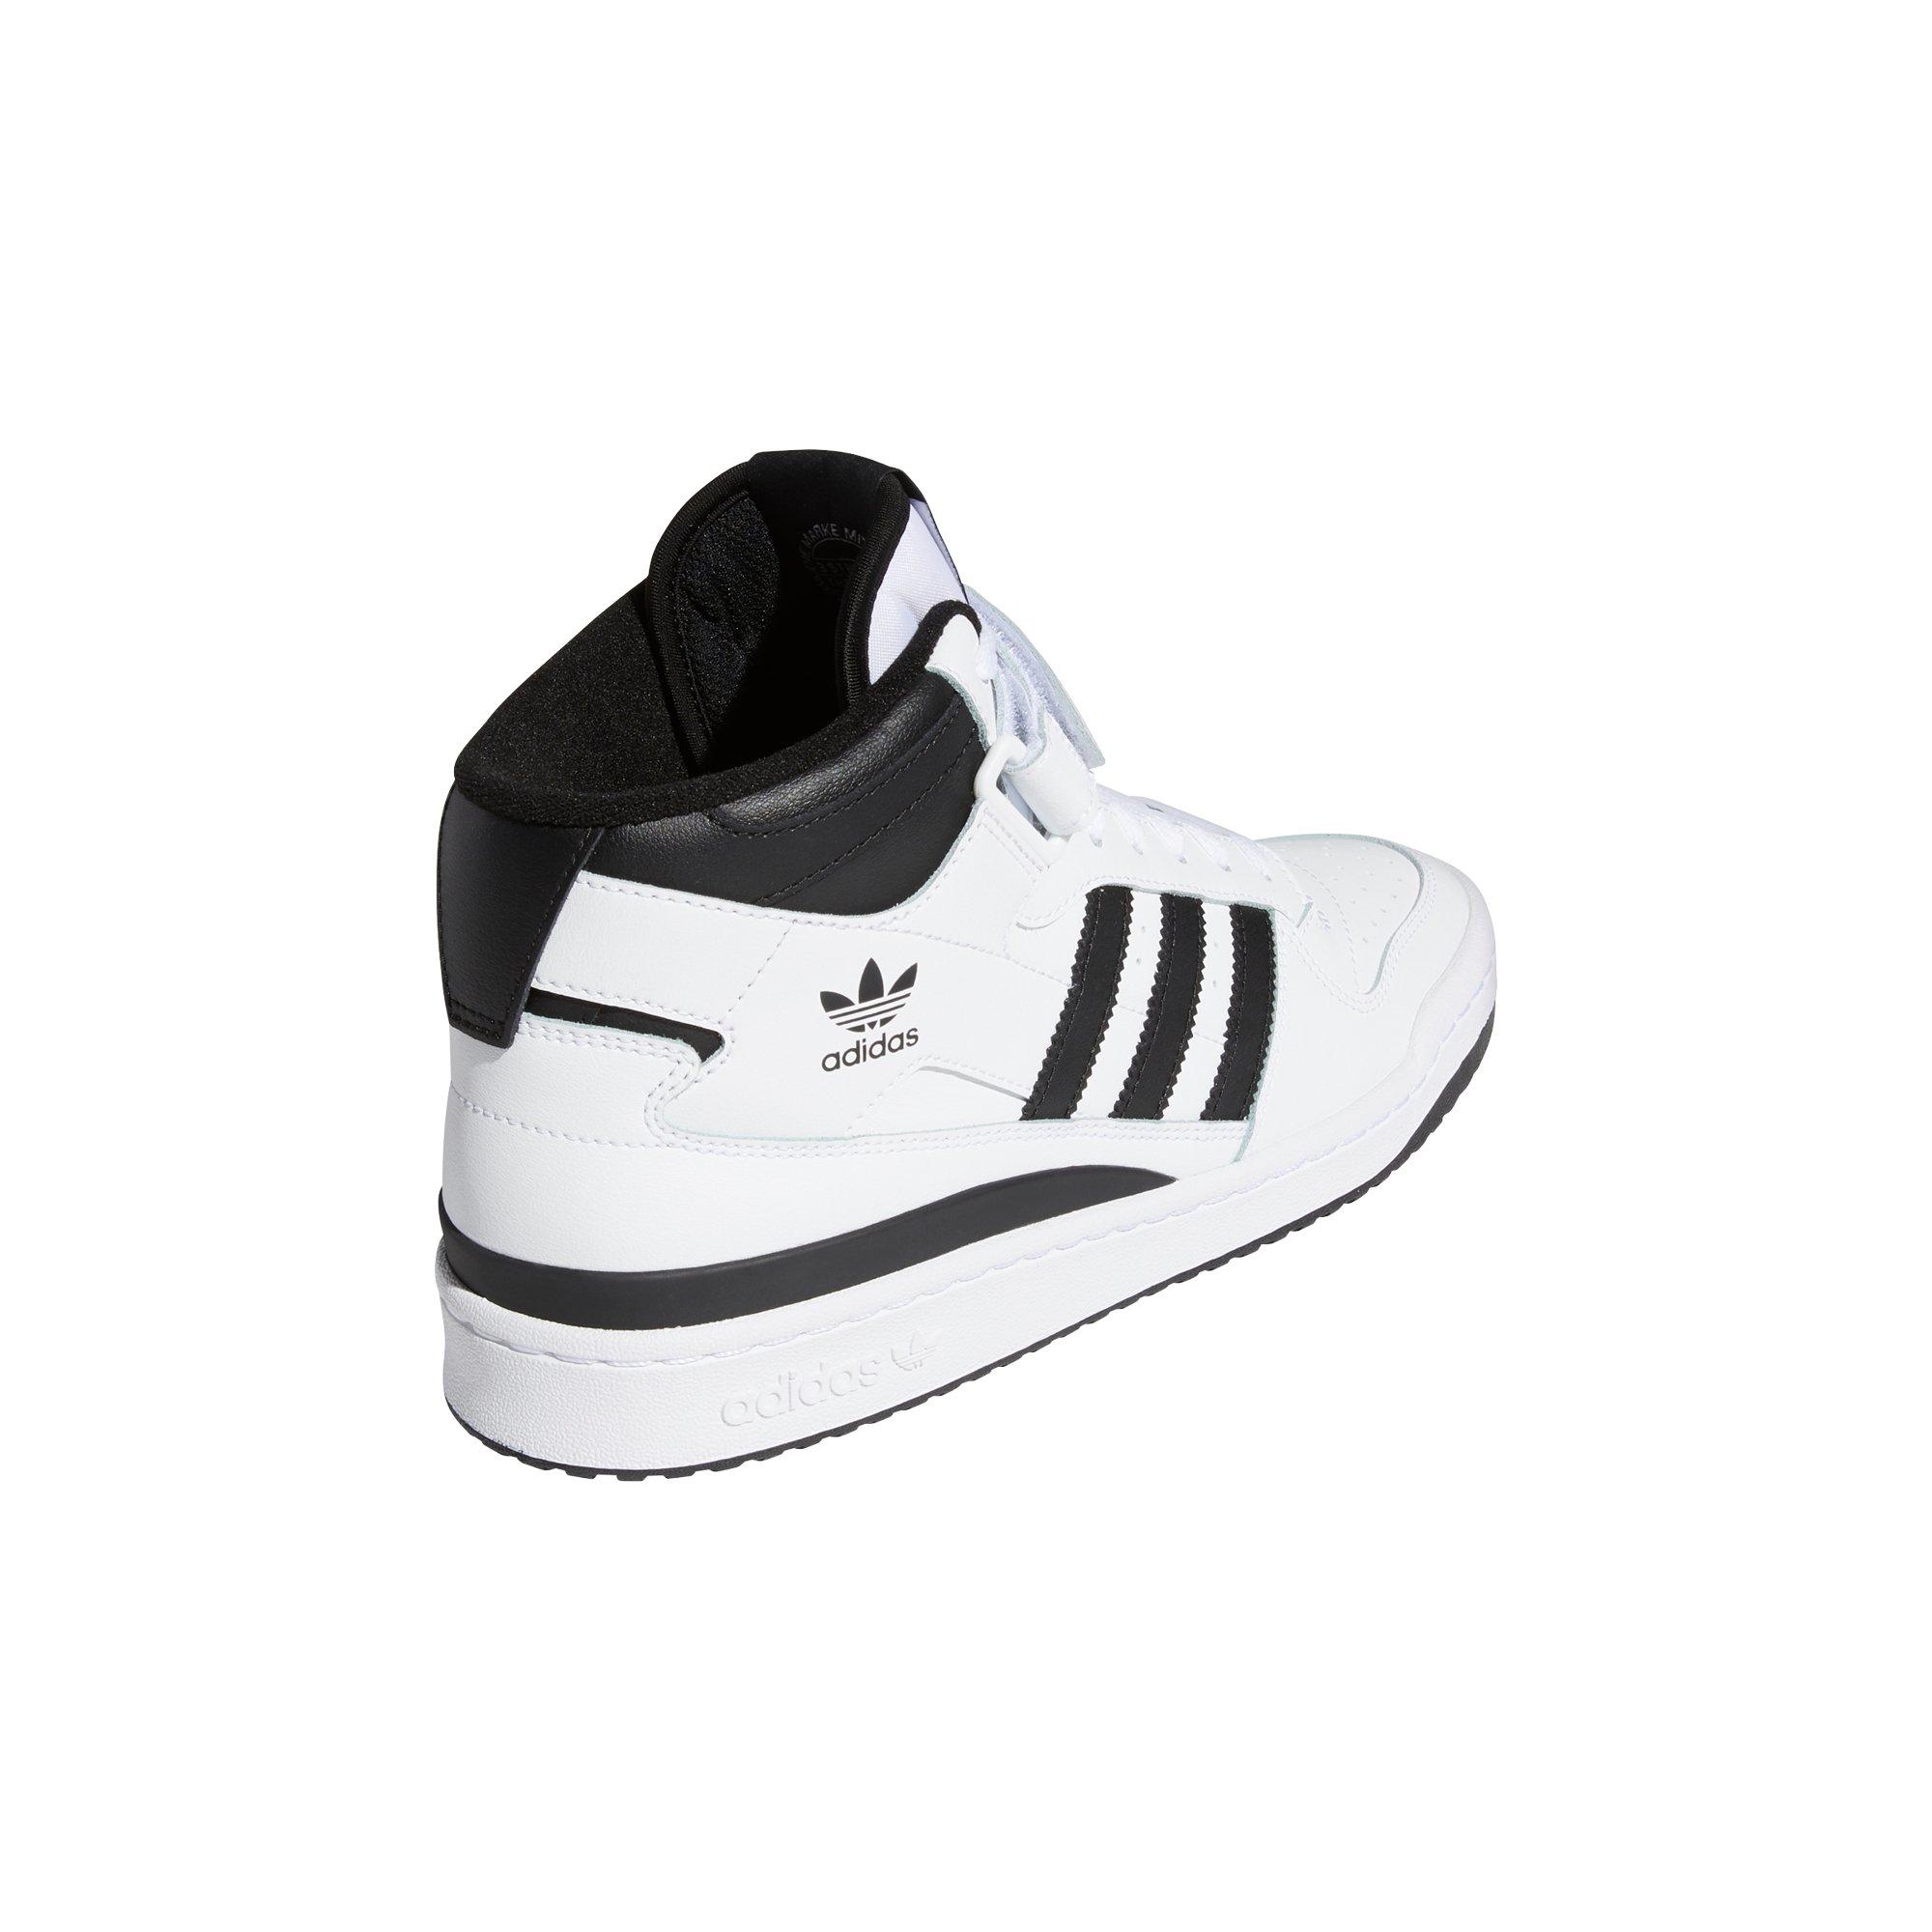 Men's shoes adidas Forum Mid Ftw White/ Core Black/ Ftw White